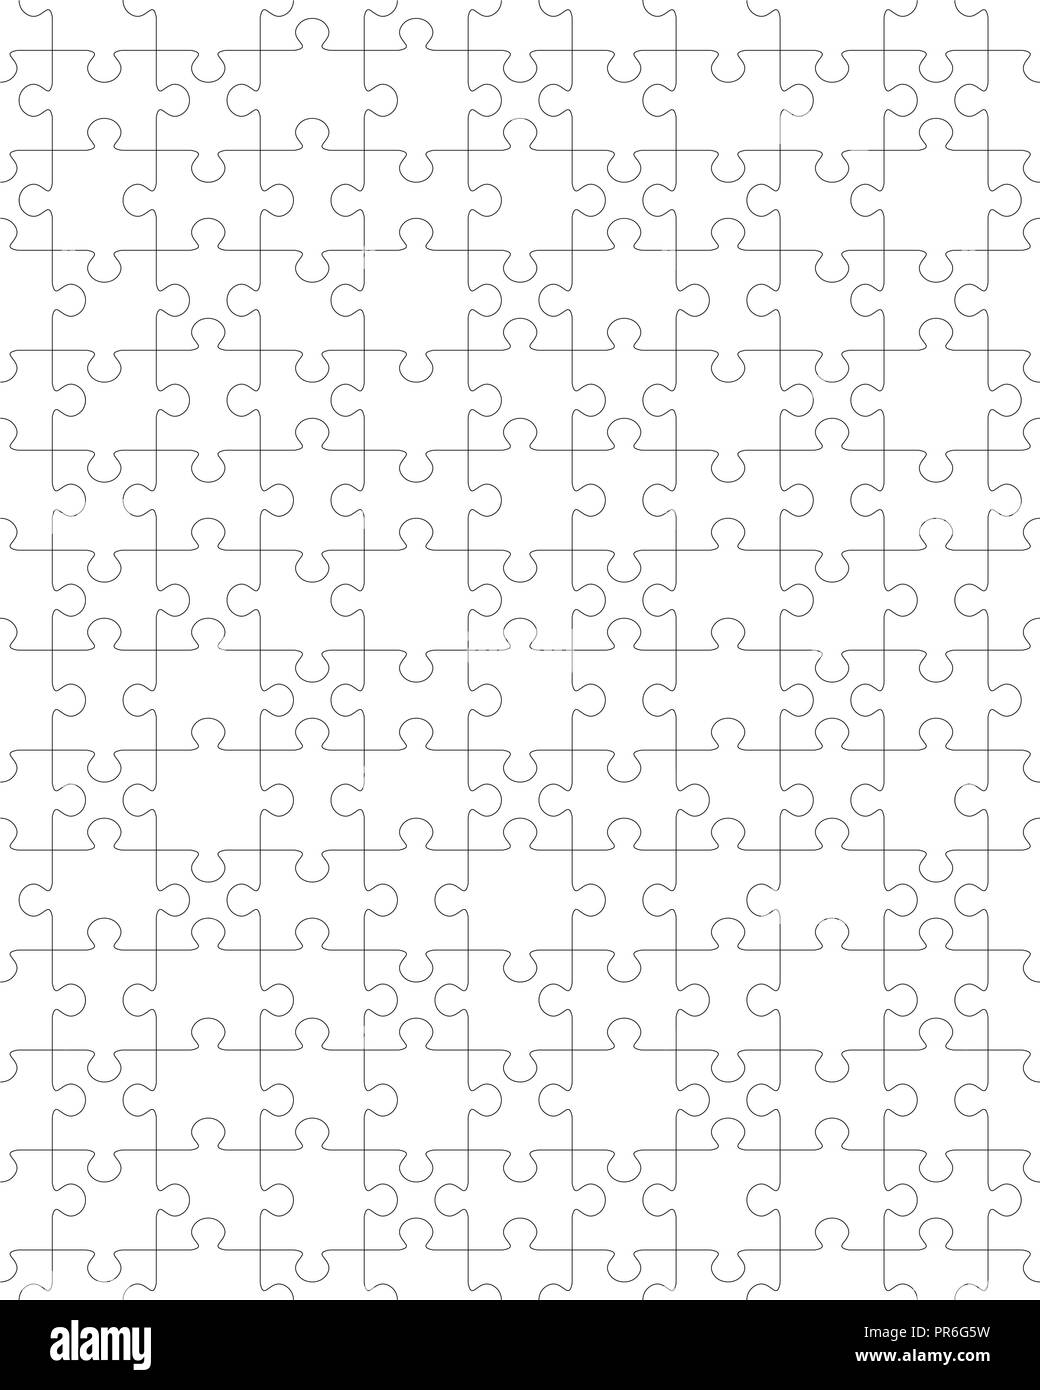 Illustrazione Vettoriale di puzzle, pezzi separati Foto Stock